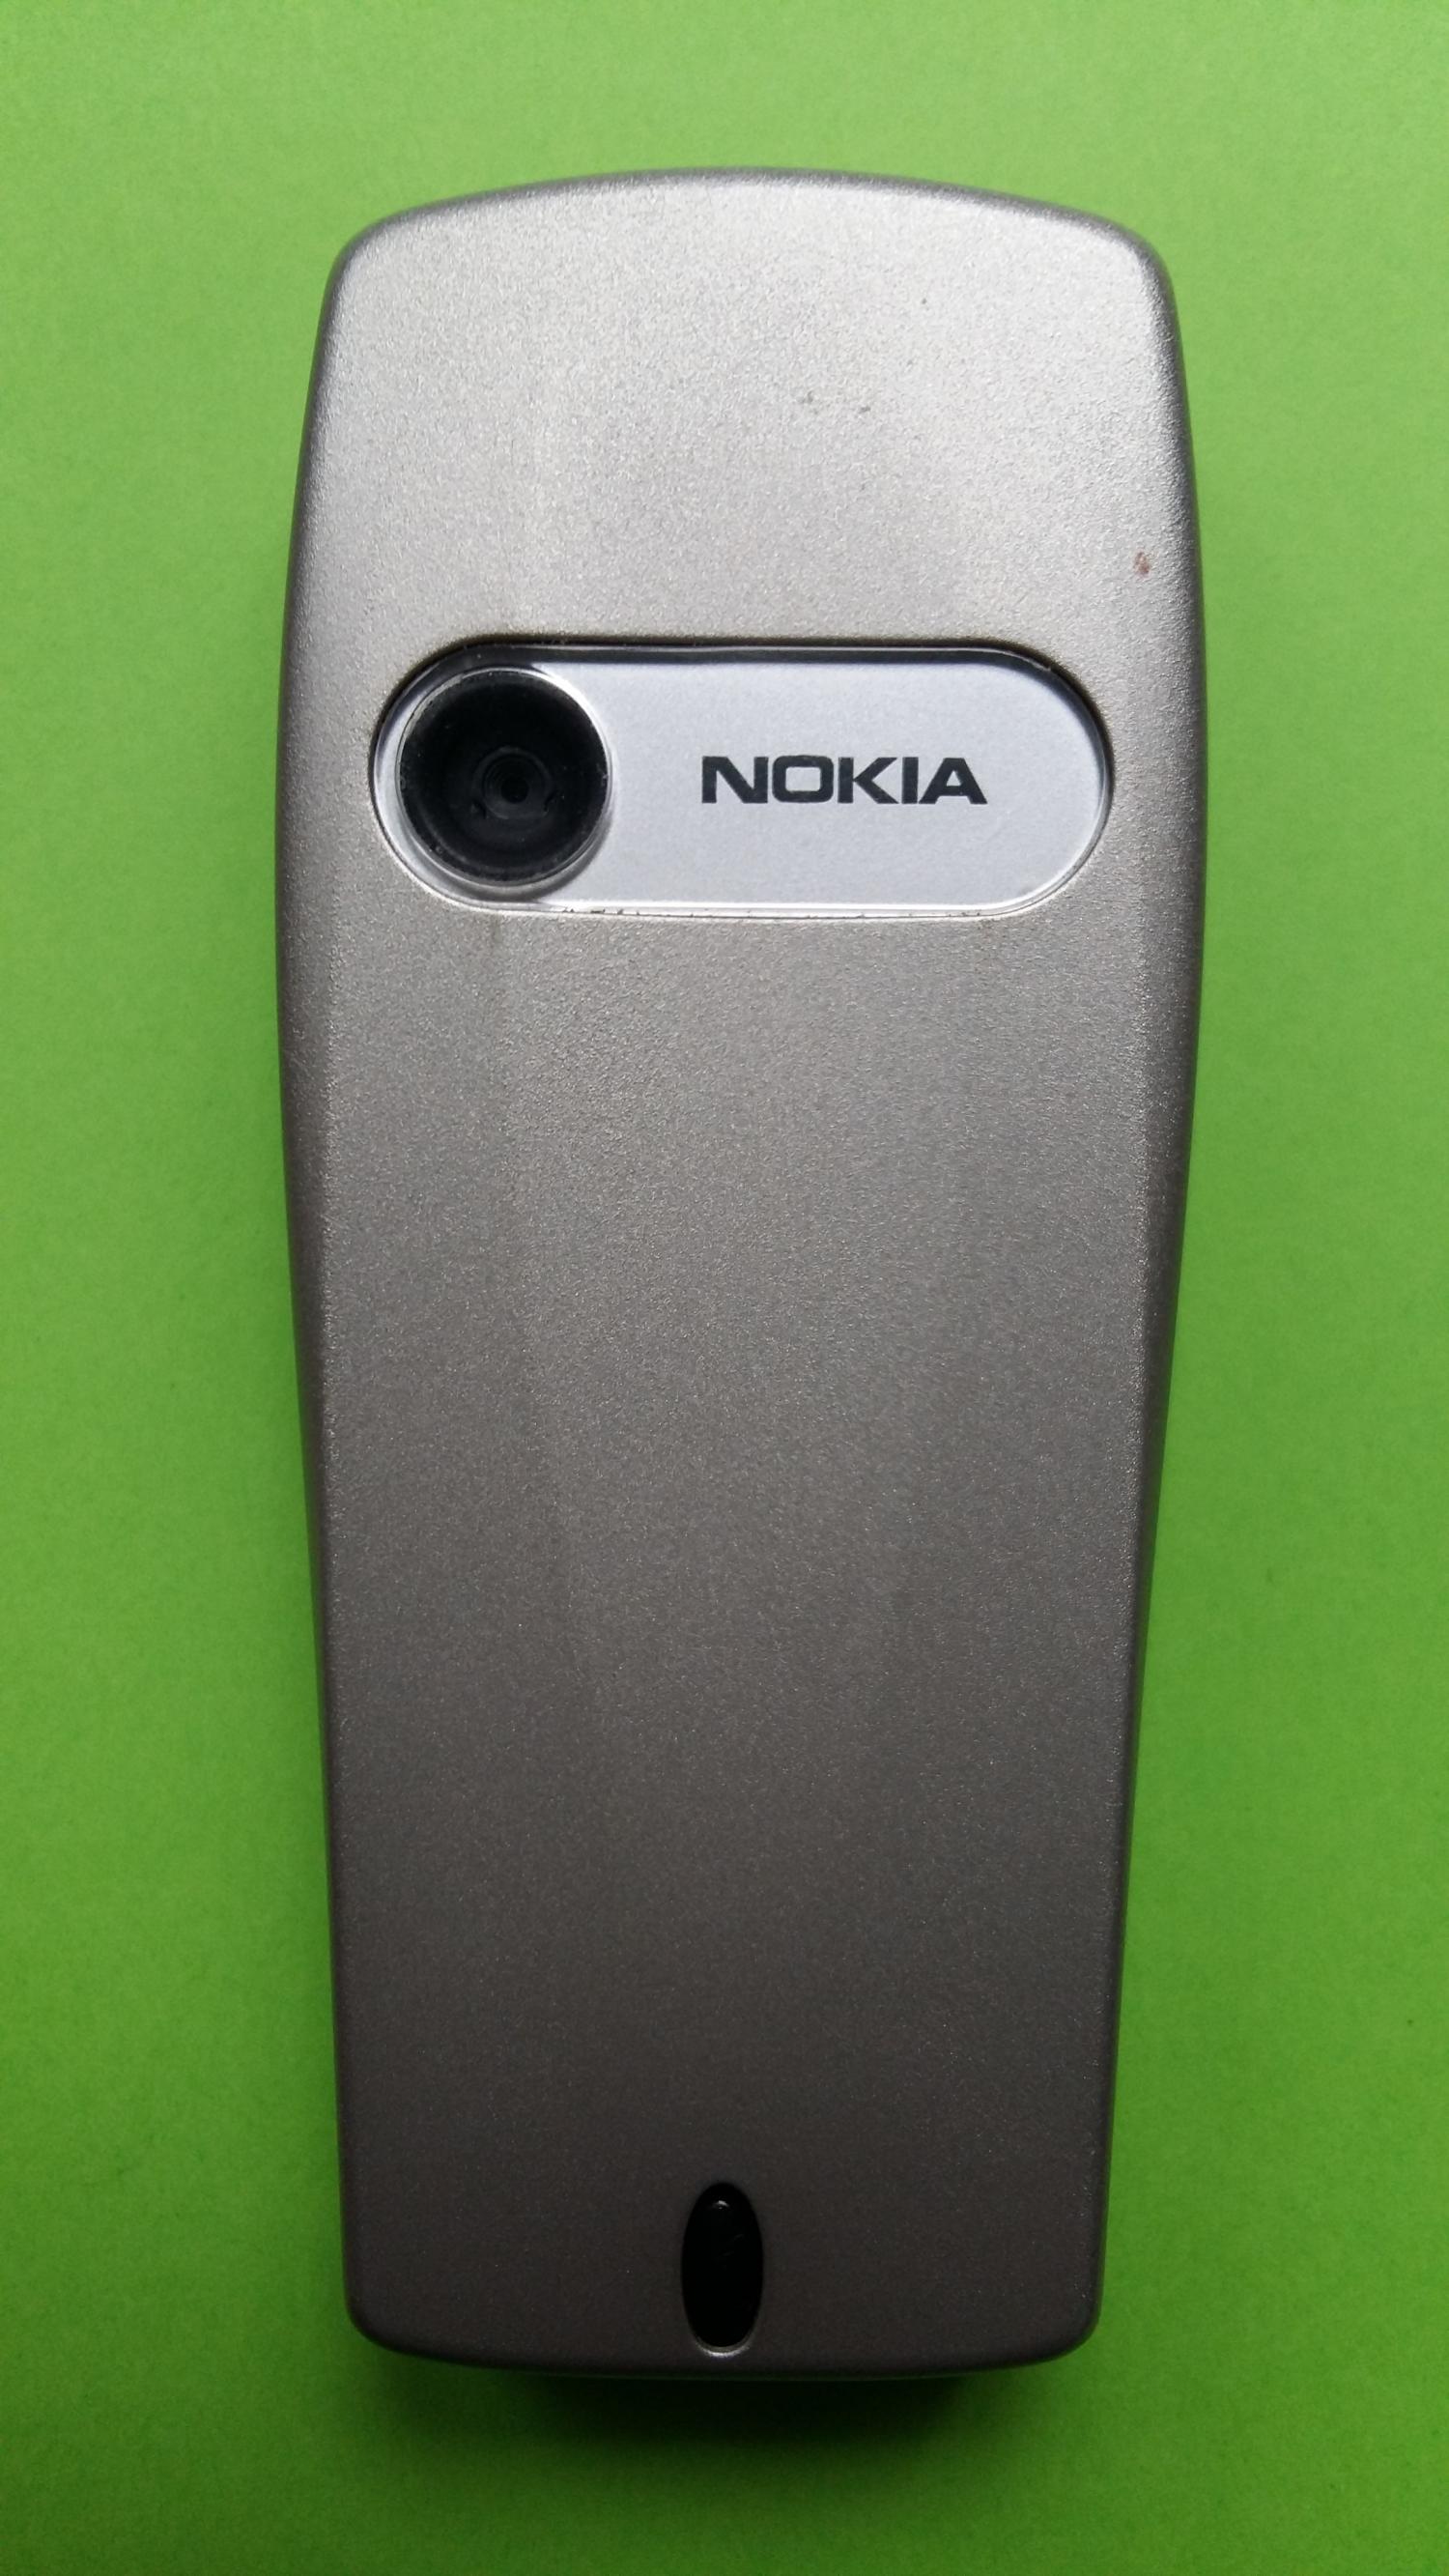 image-7316133-Nokia 6610i (12)2.jpg